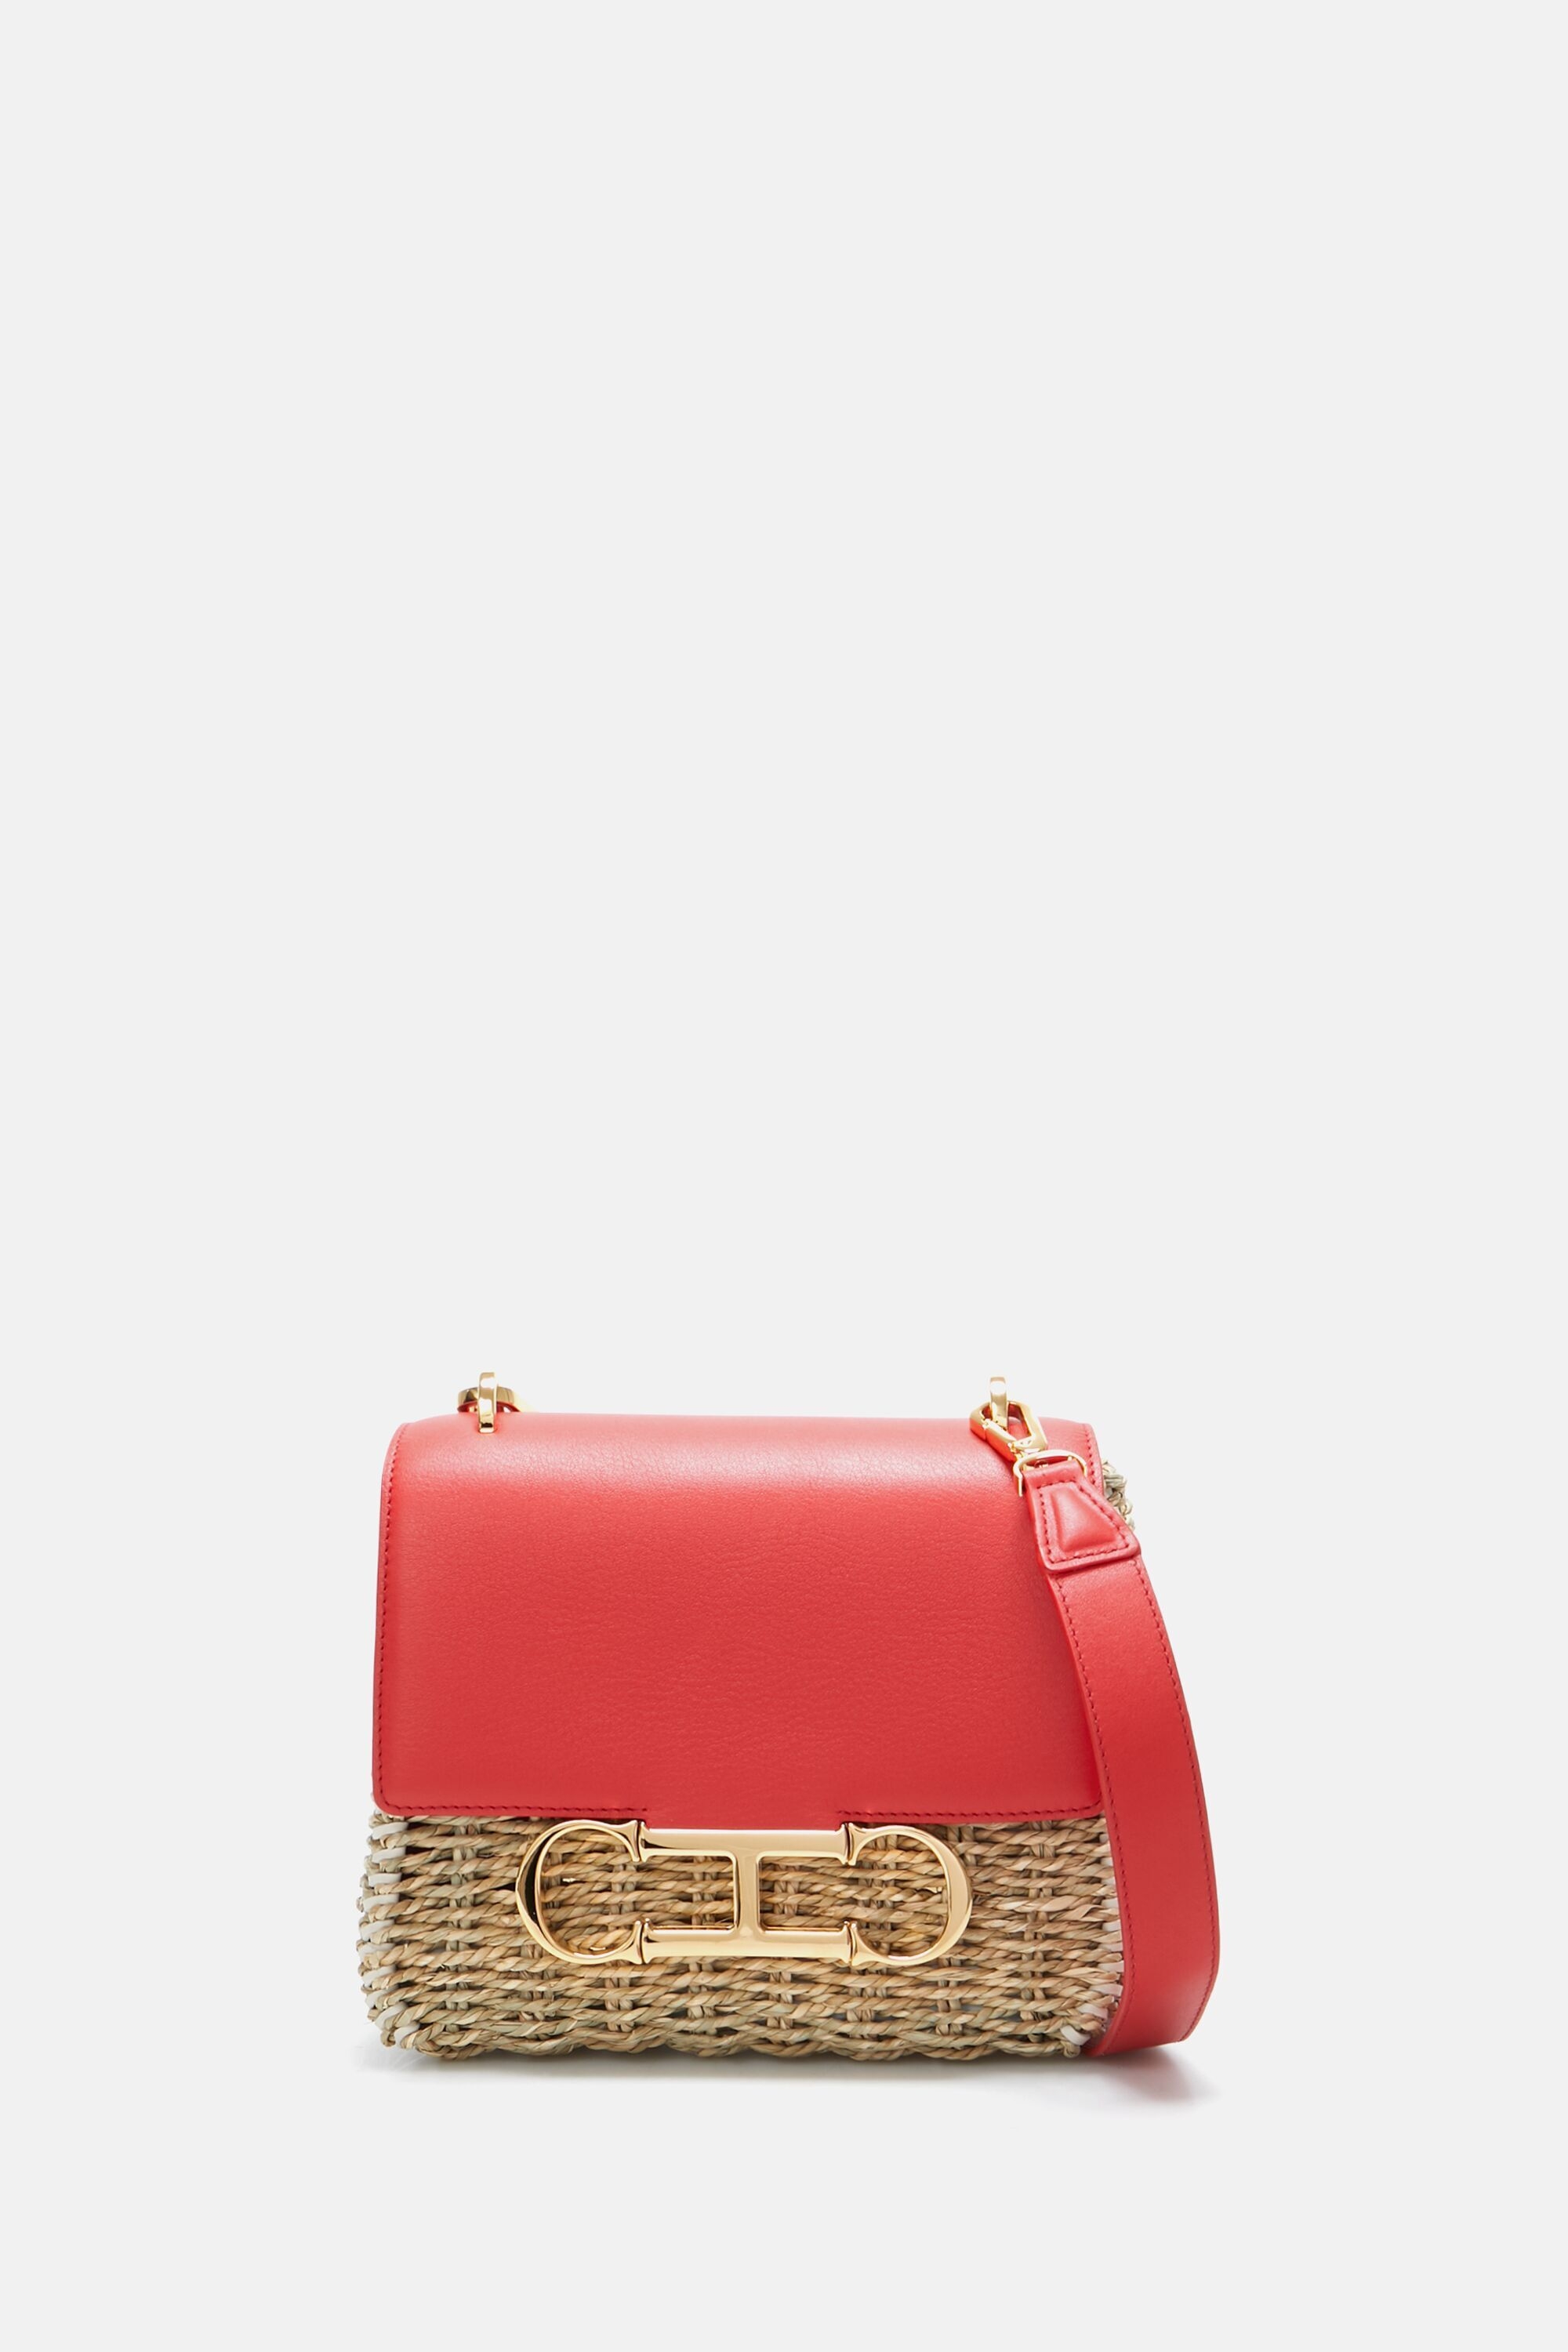 CH Carolina Herrera Pink Leather Initial Insignia Shoulder Bag CH